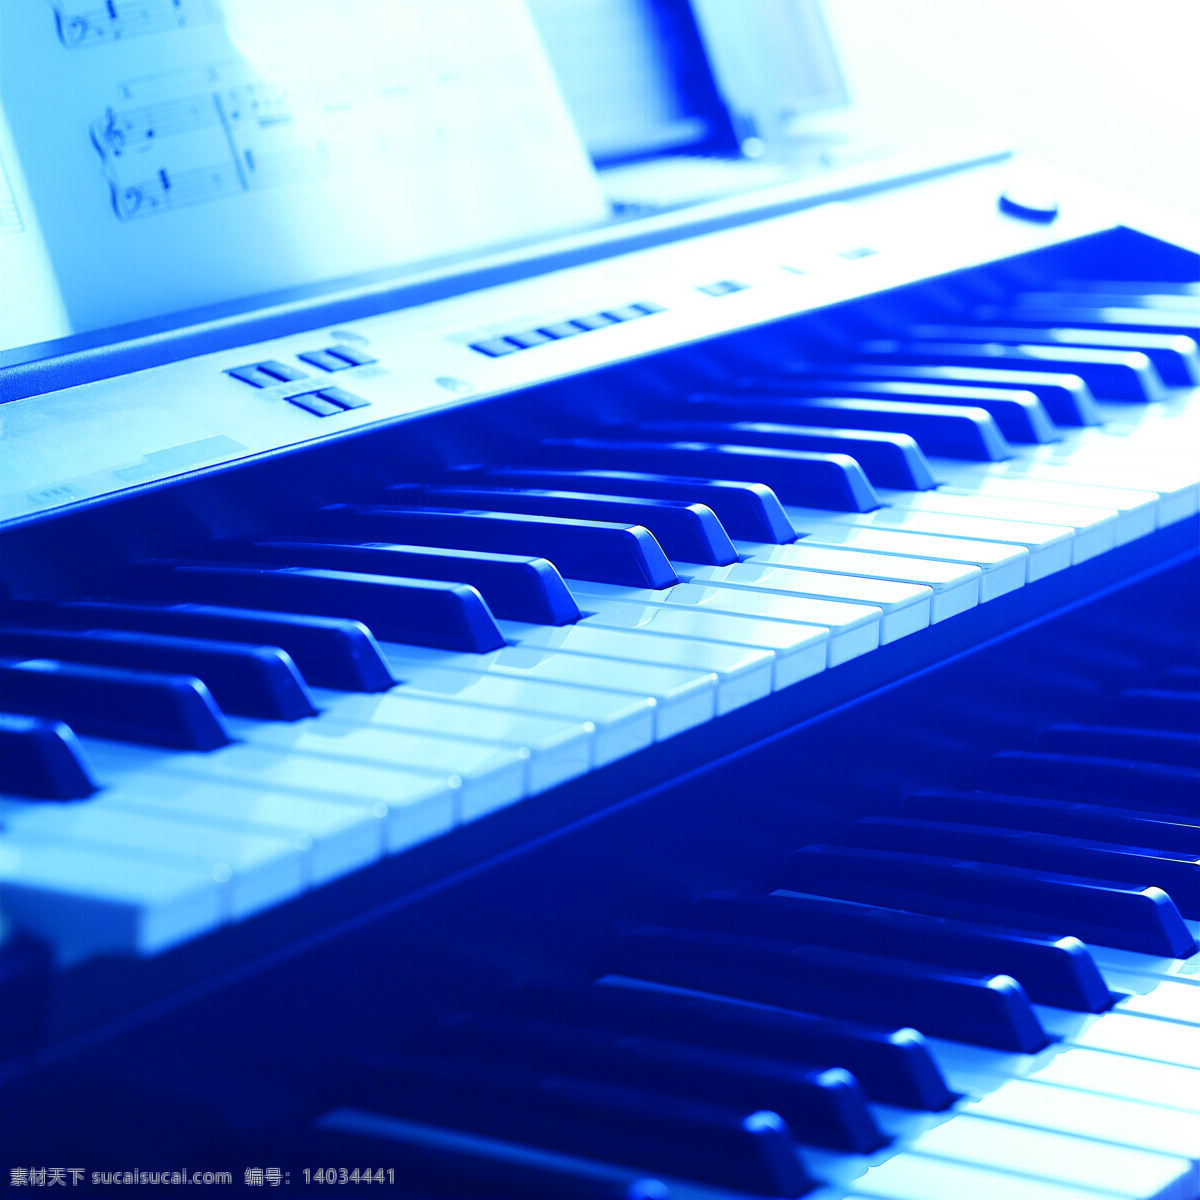 电子 钢琴 乐谱 音乐艺术 音乐 电子琴 琴键 特写 摄影图片 高清图片 影音娱乐 生活百科